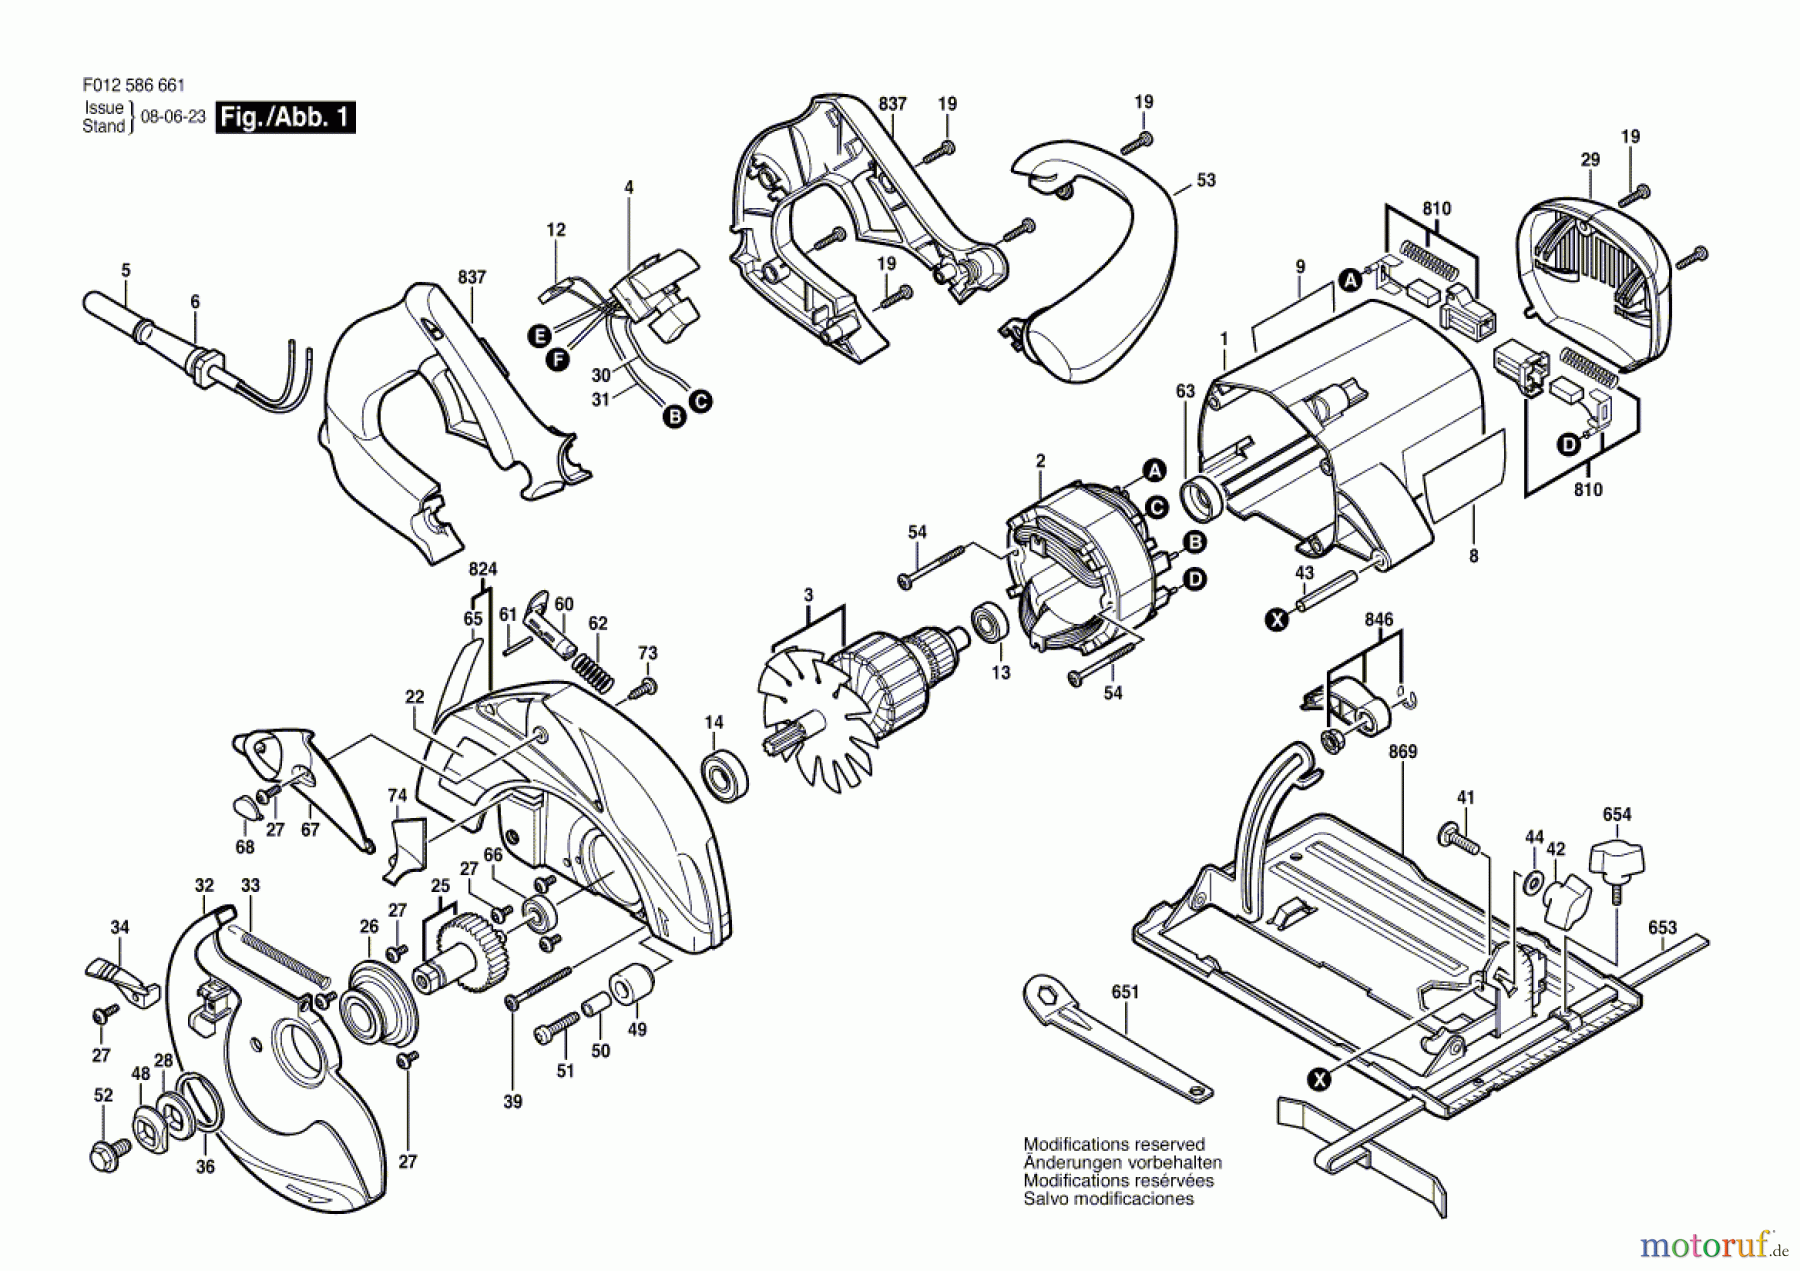  Bosch Werkzeug Handkreissäge 5866 Seite 1